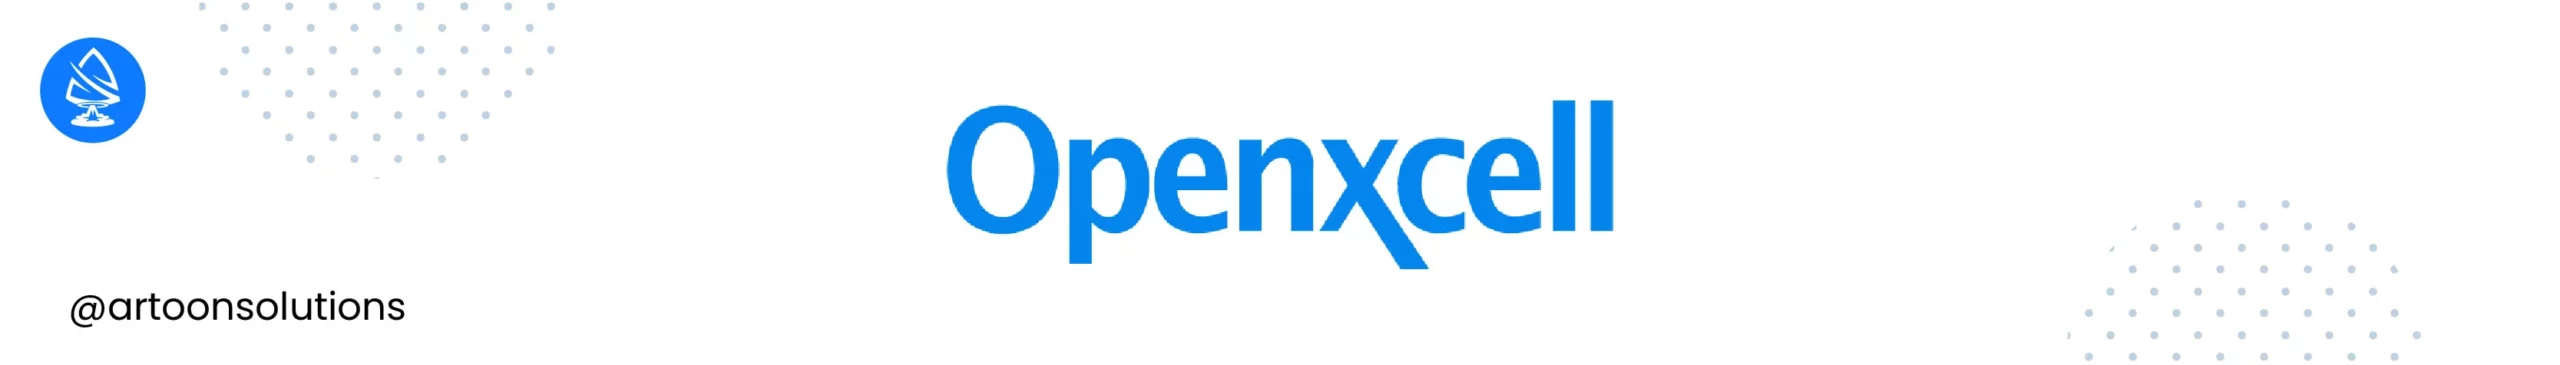 OpenXcell - React js development companies